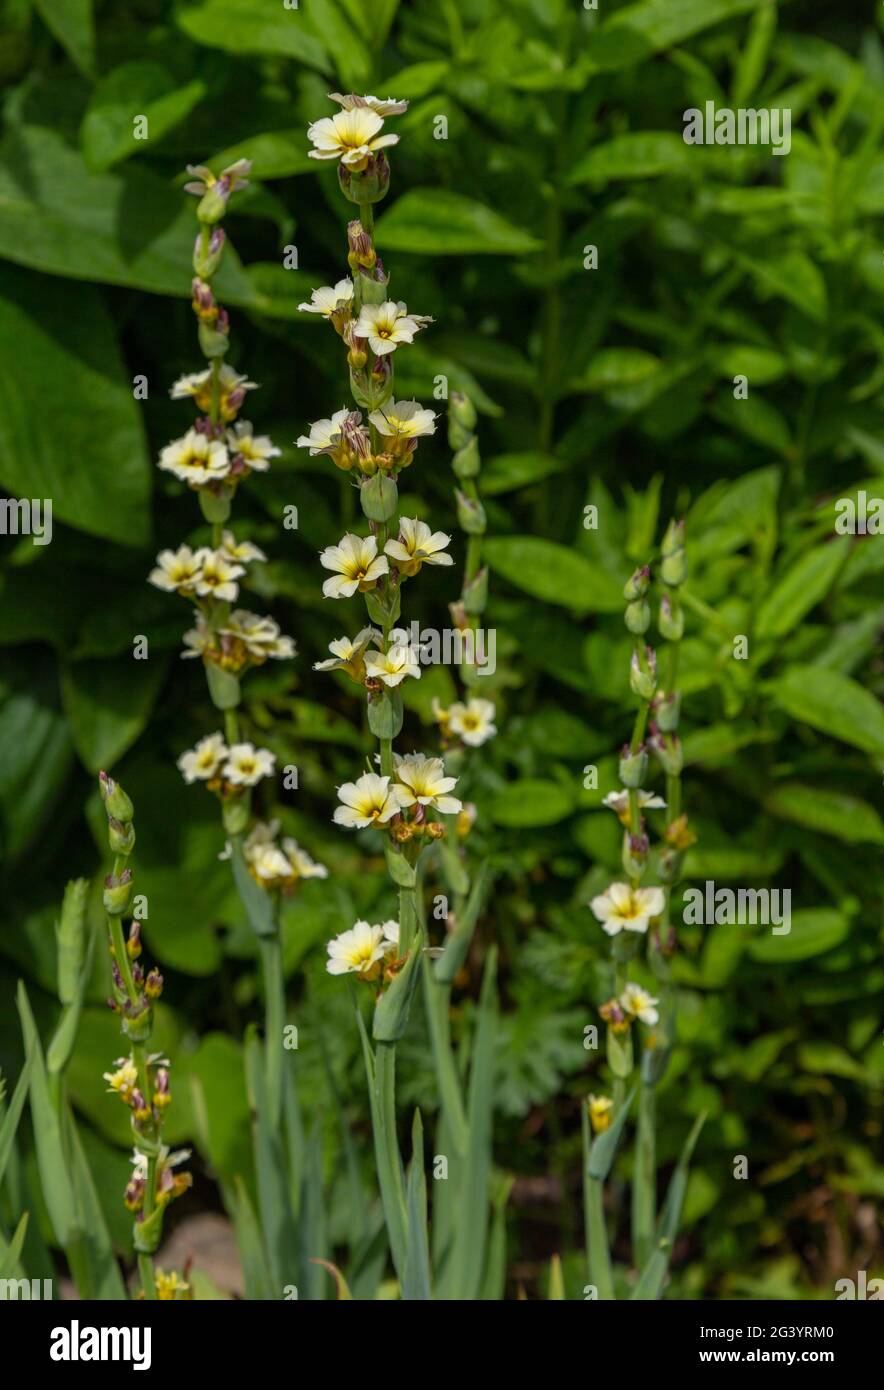 Sisyrinchium striatum - pale yellow eyed grass. Stock Photo